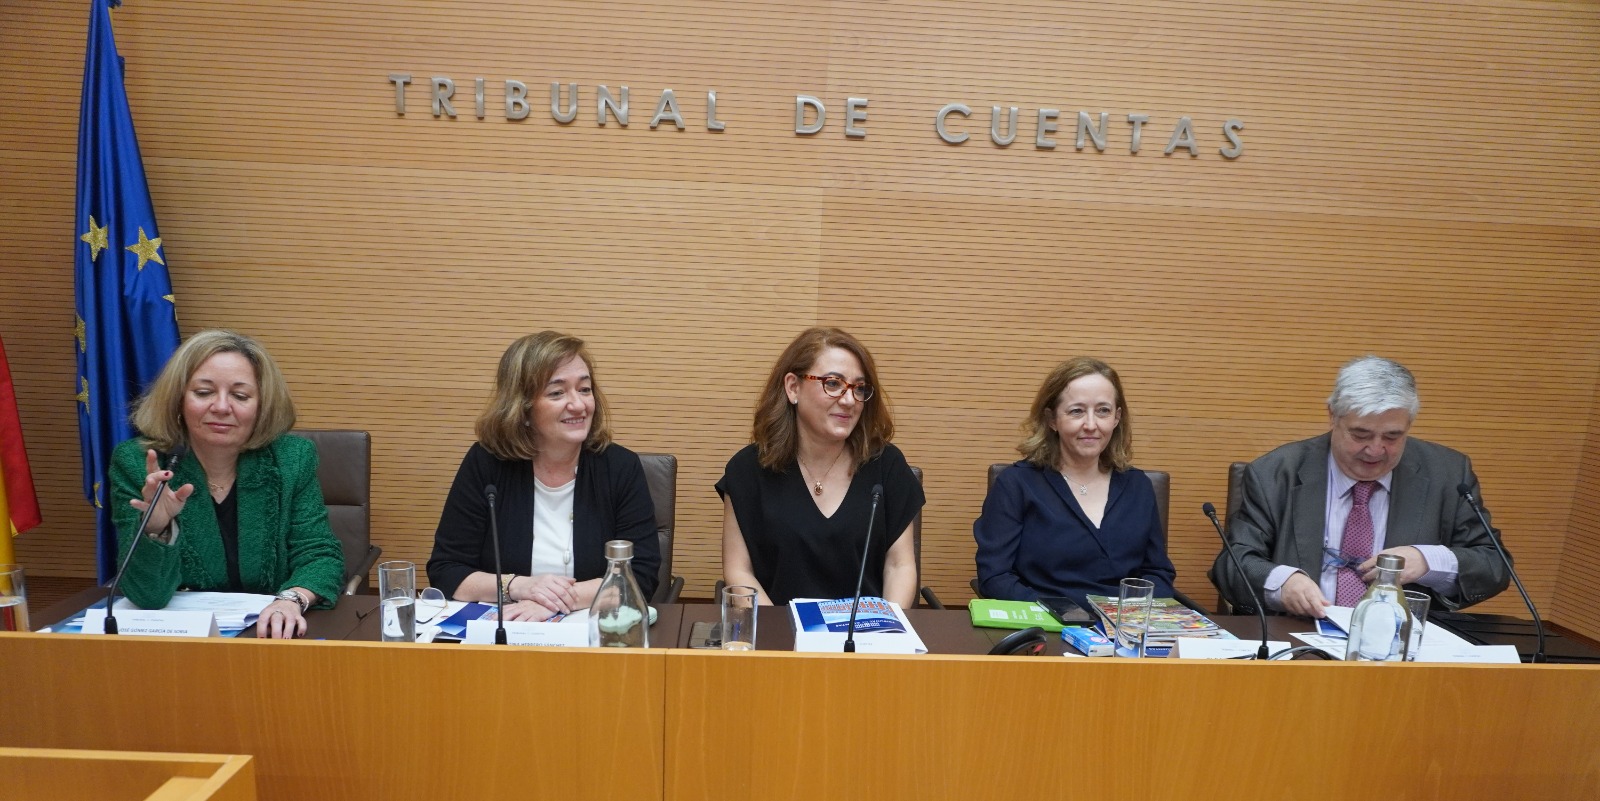 Cristina Herrero Curso de Evaluación de Políticas Públicas Tribunal de Cuentas